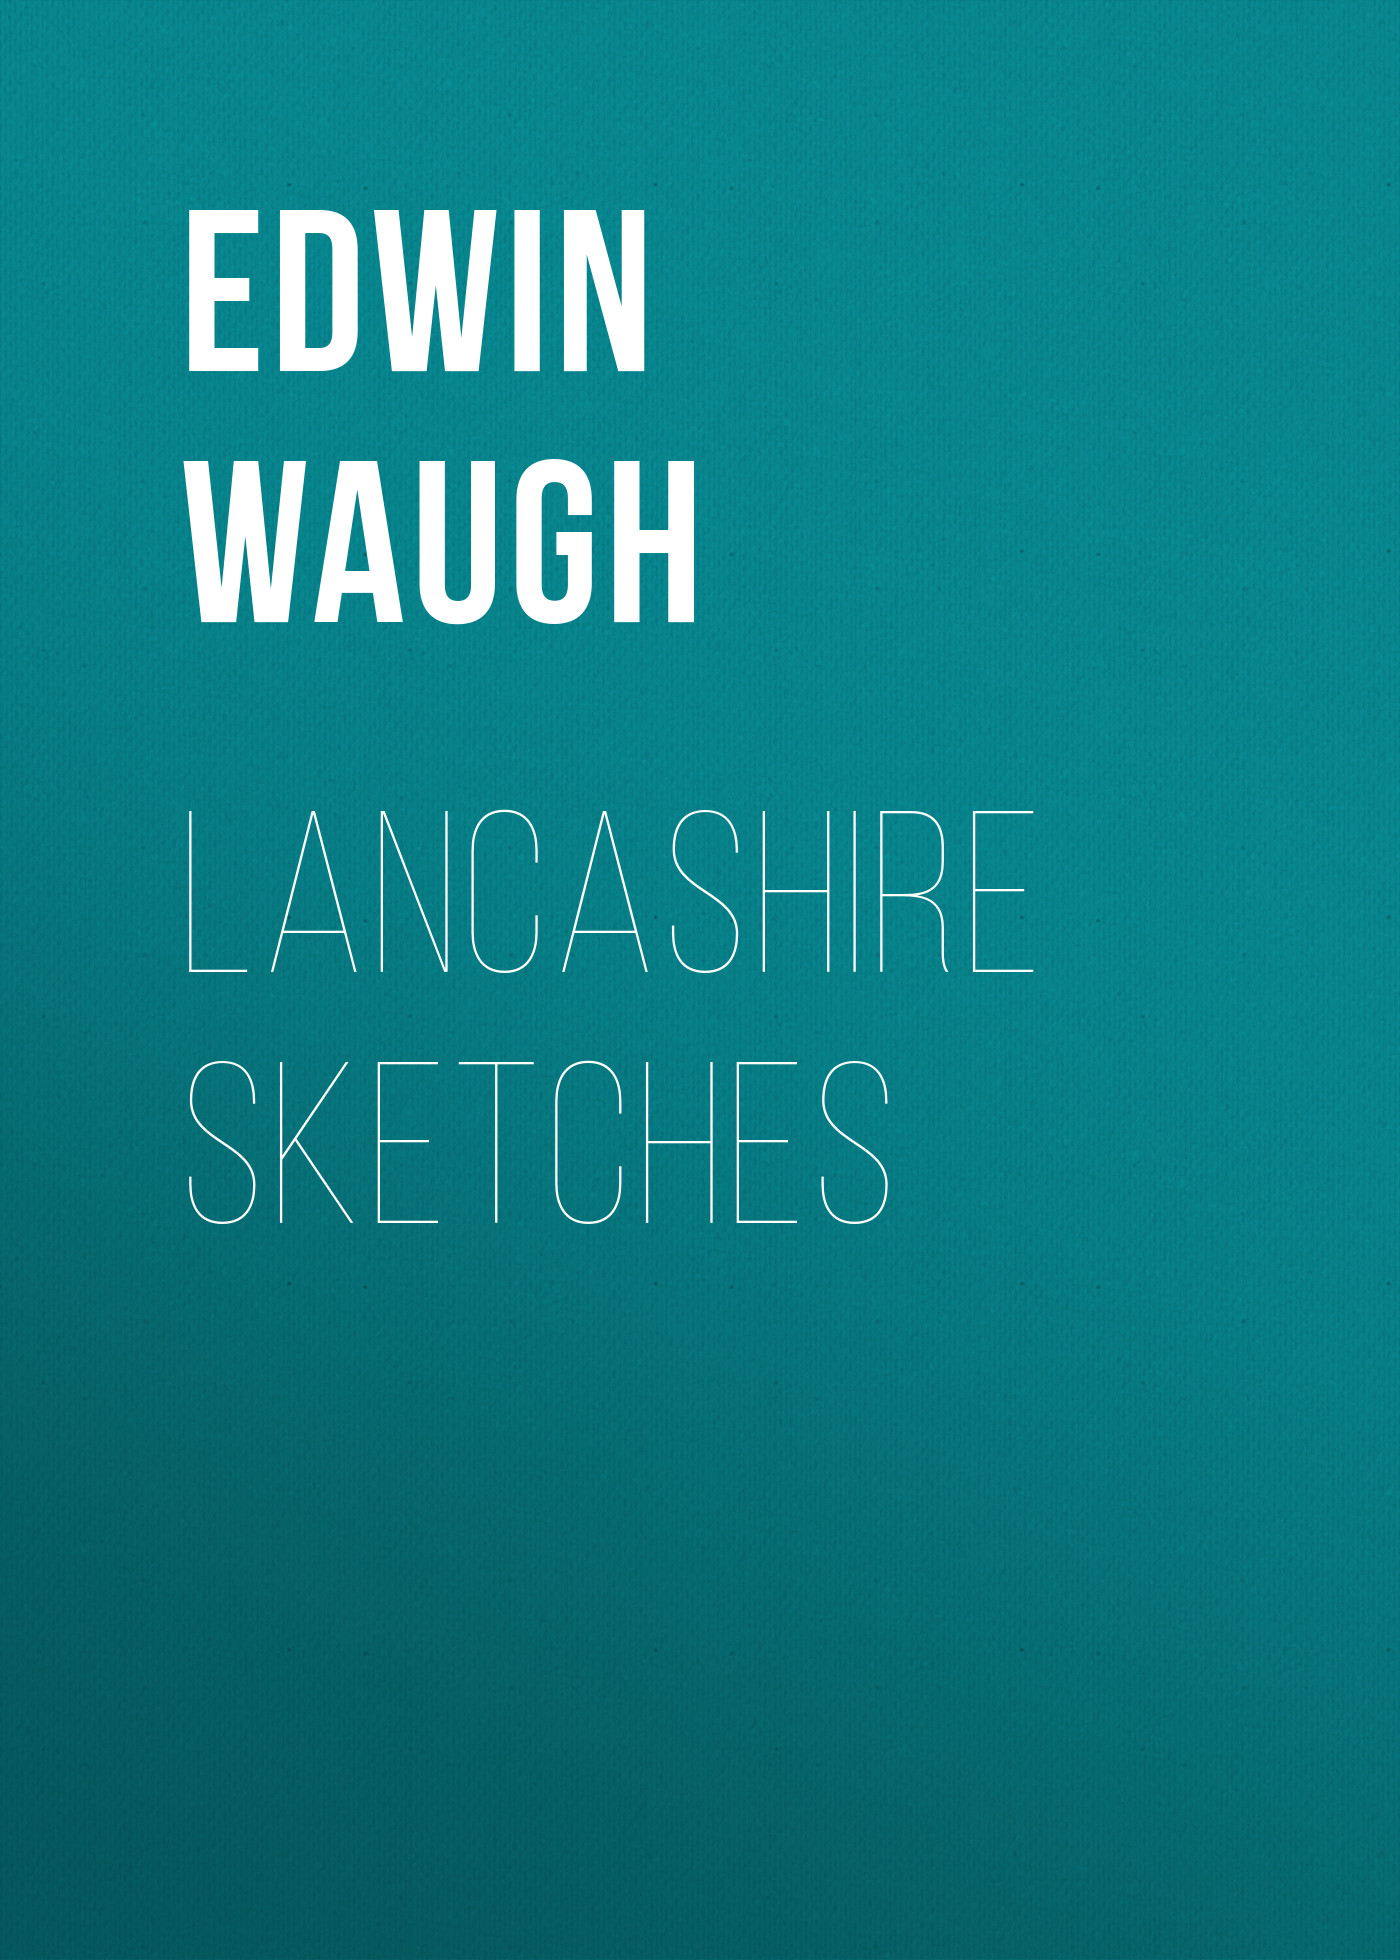 Книга Lancashire Sketches из серии , созданная Edwin Waugh, может относится к жанру Книги о Путешествиях, Зарубежная старинная литература, Зарубежная классика. Стоимость электронной книги Lancashire Sketches с идентификатором 34336954 составляет 0 руб.